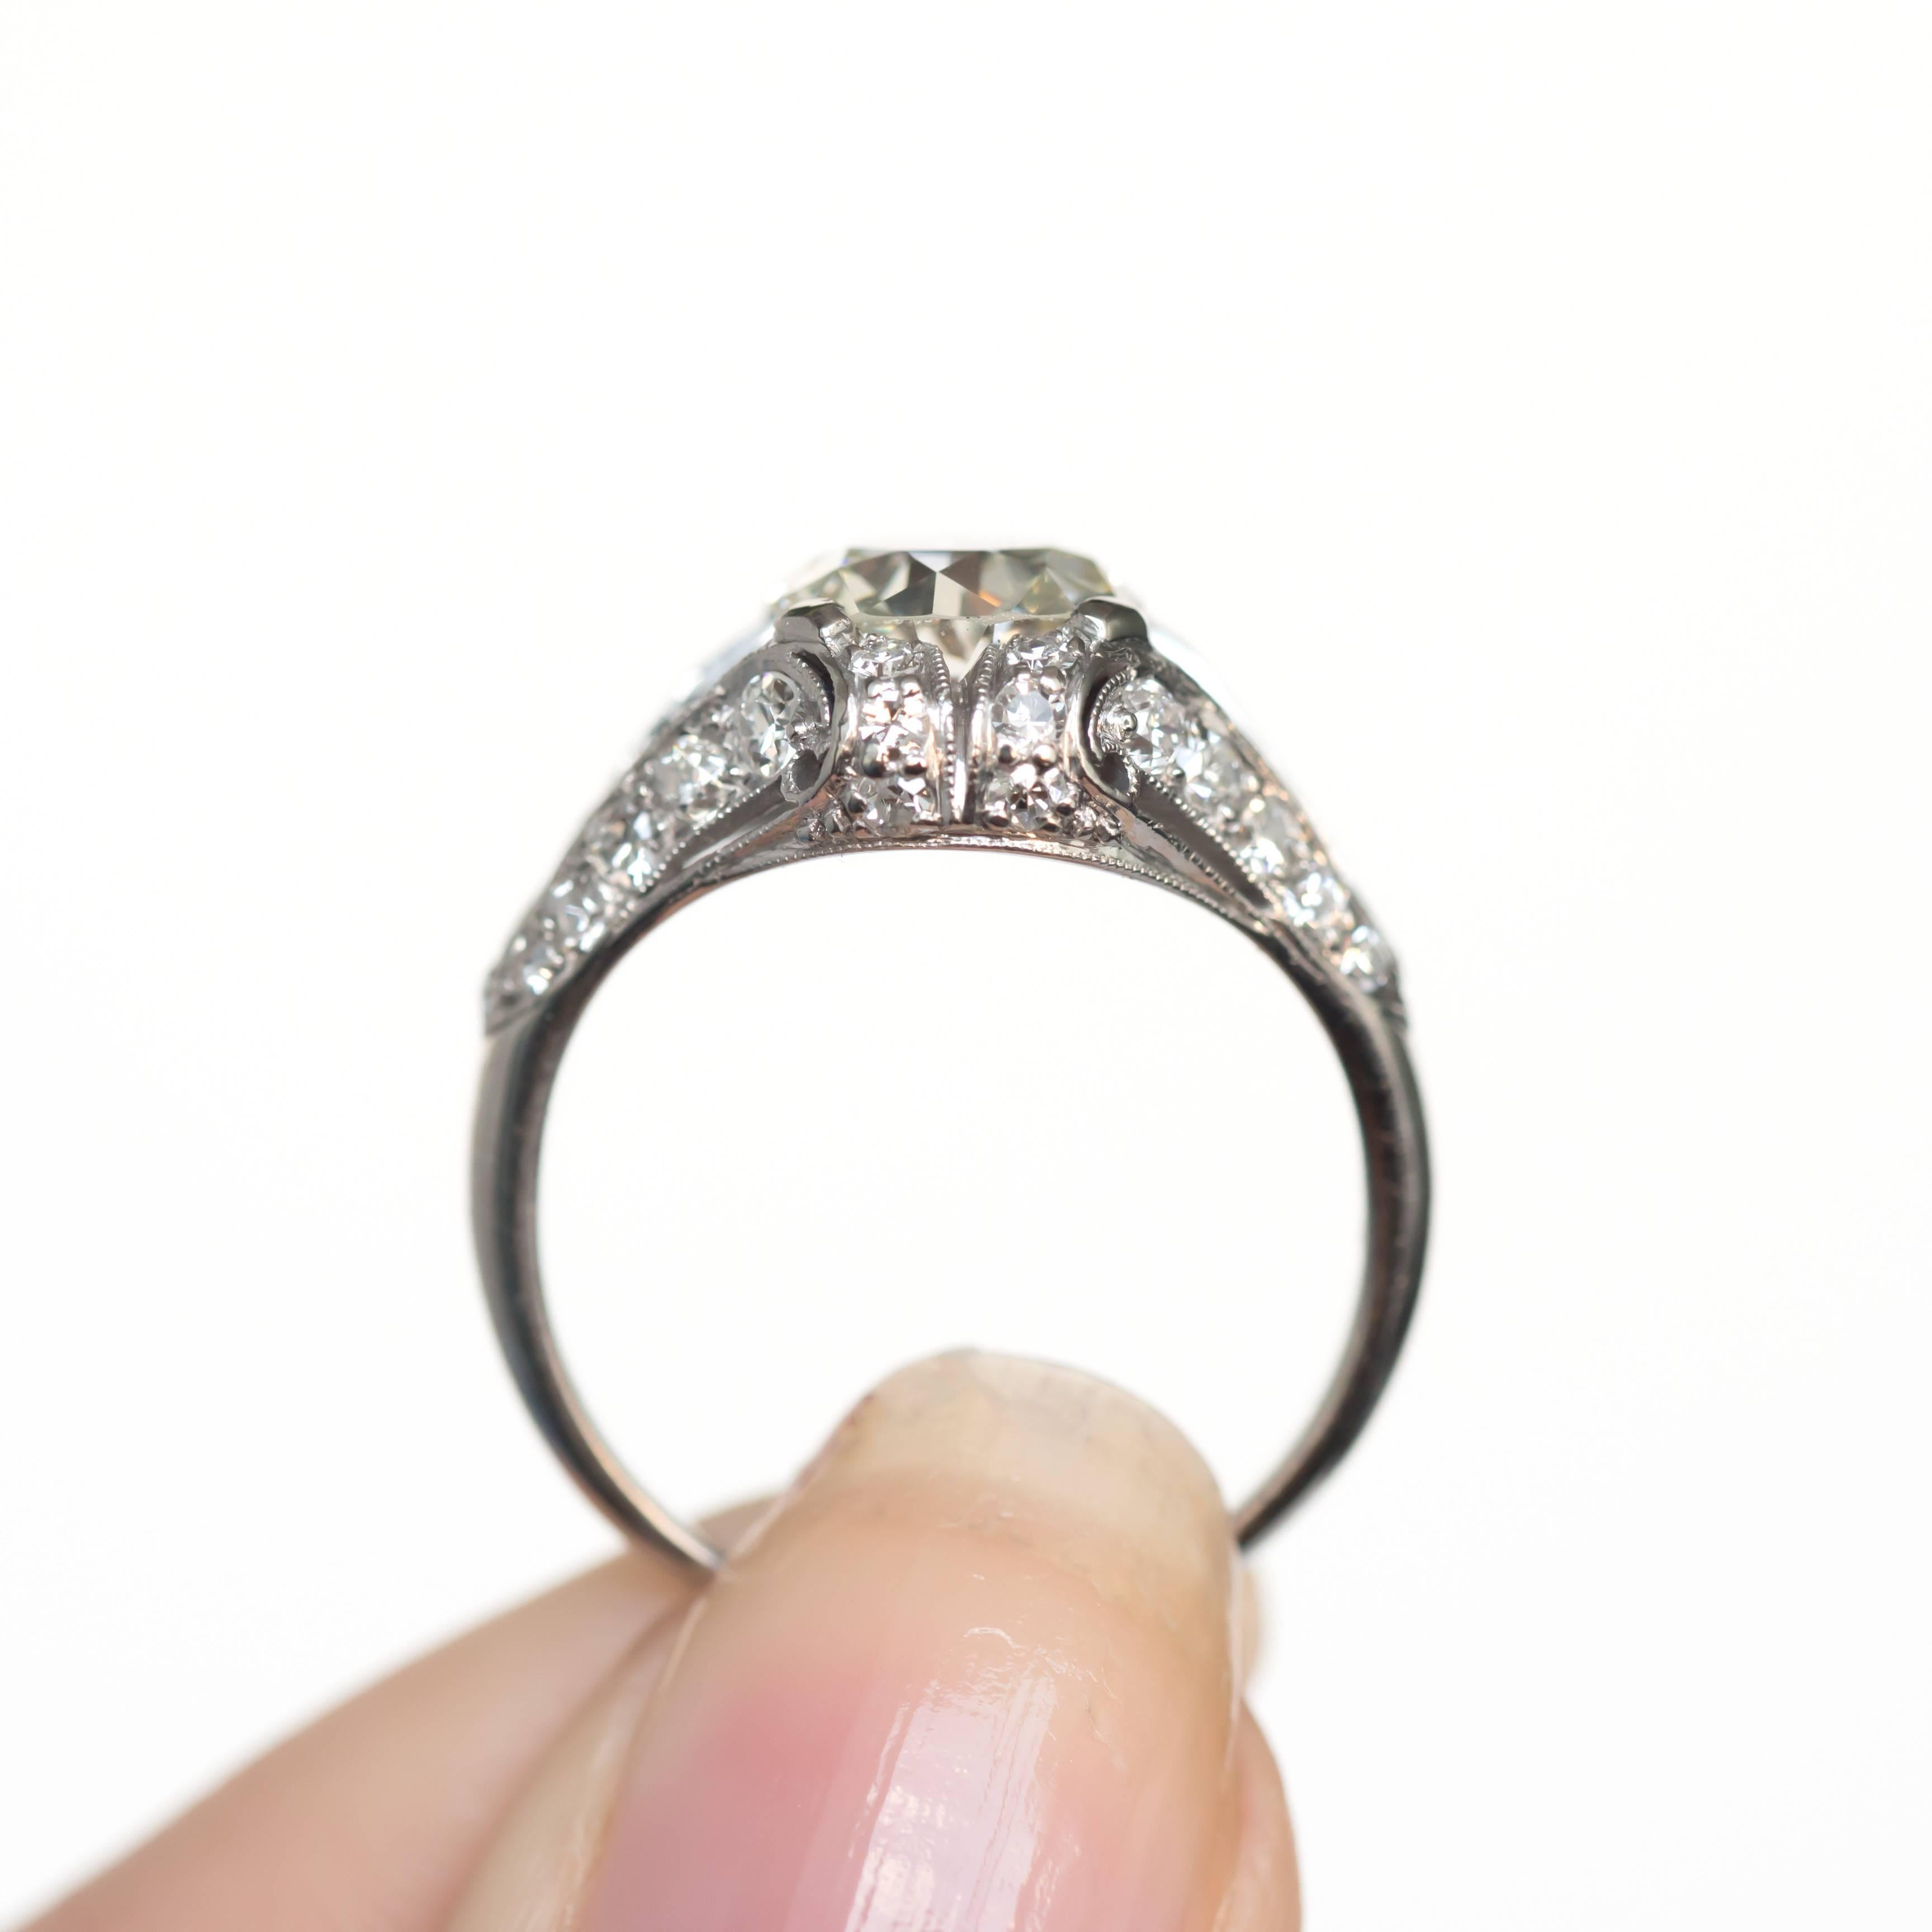 1.52 Carat Diamond Platinum Engagement Ring In Excellent Condition For Sale In Atlanta, GA